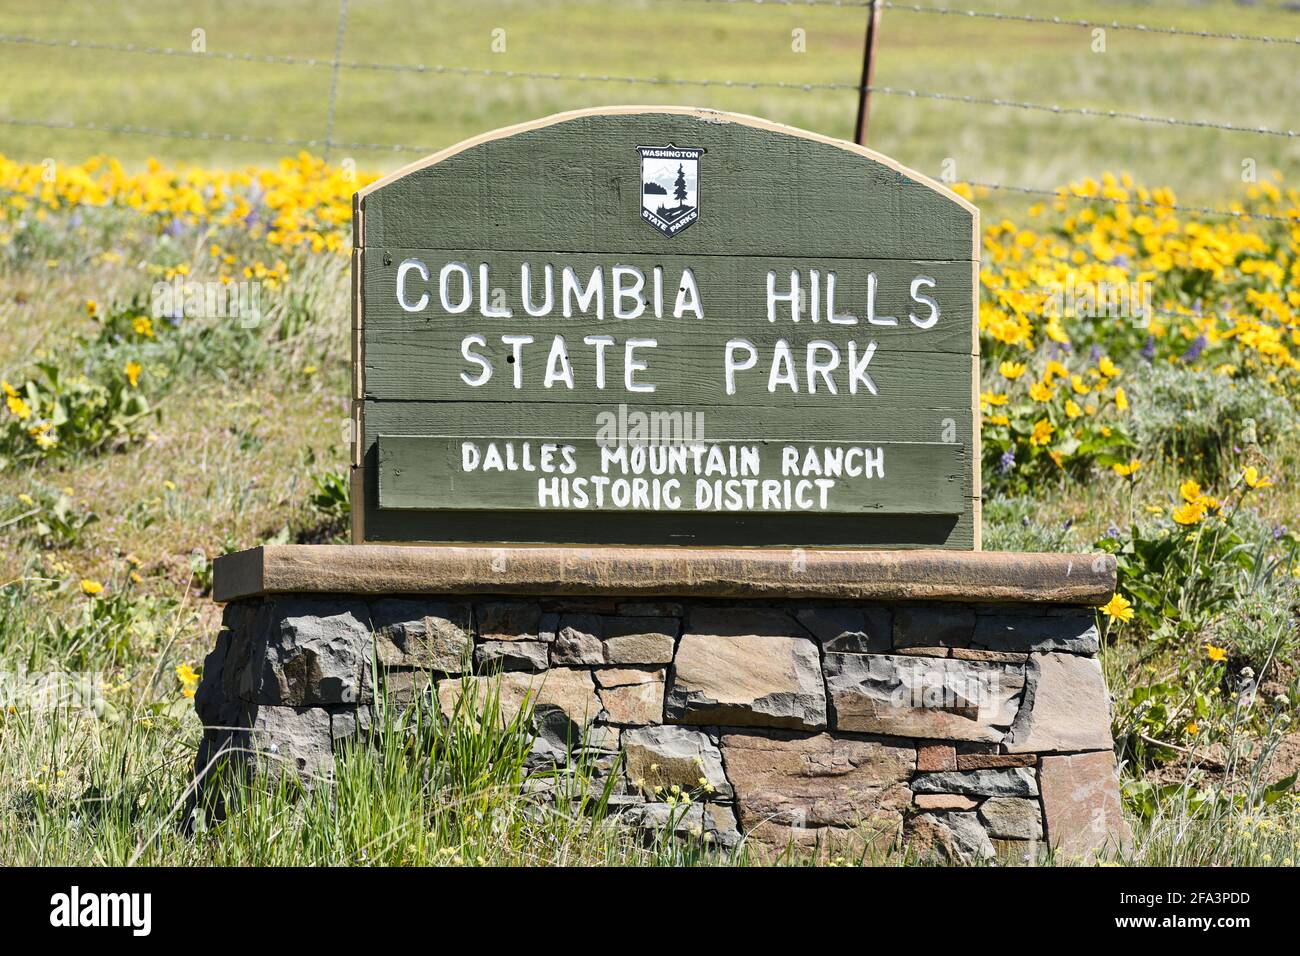 Panneau en bois sur la plinthe en pierre pour le parc national de Columbia Hills, la section du district historique de Dalles Mountain Ranch. C'est un parc national de Washington Banque D'Images